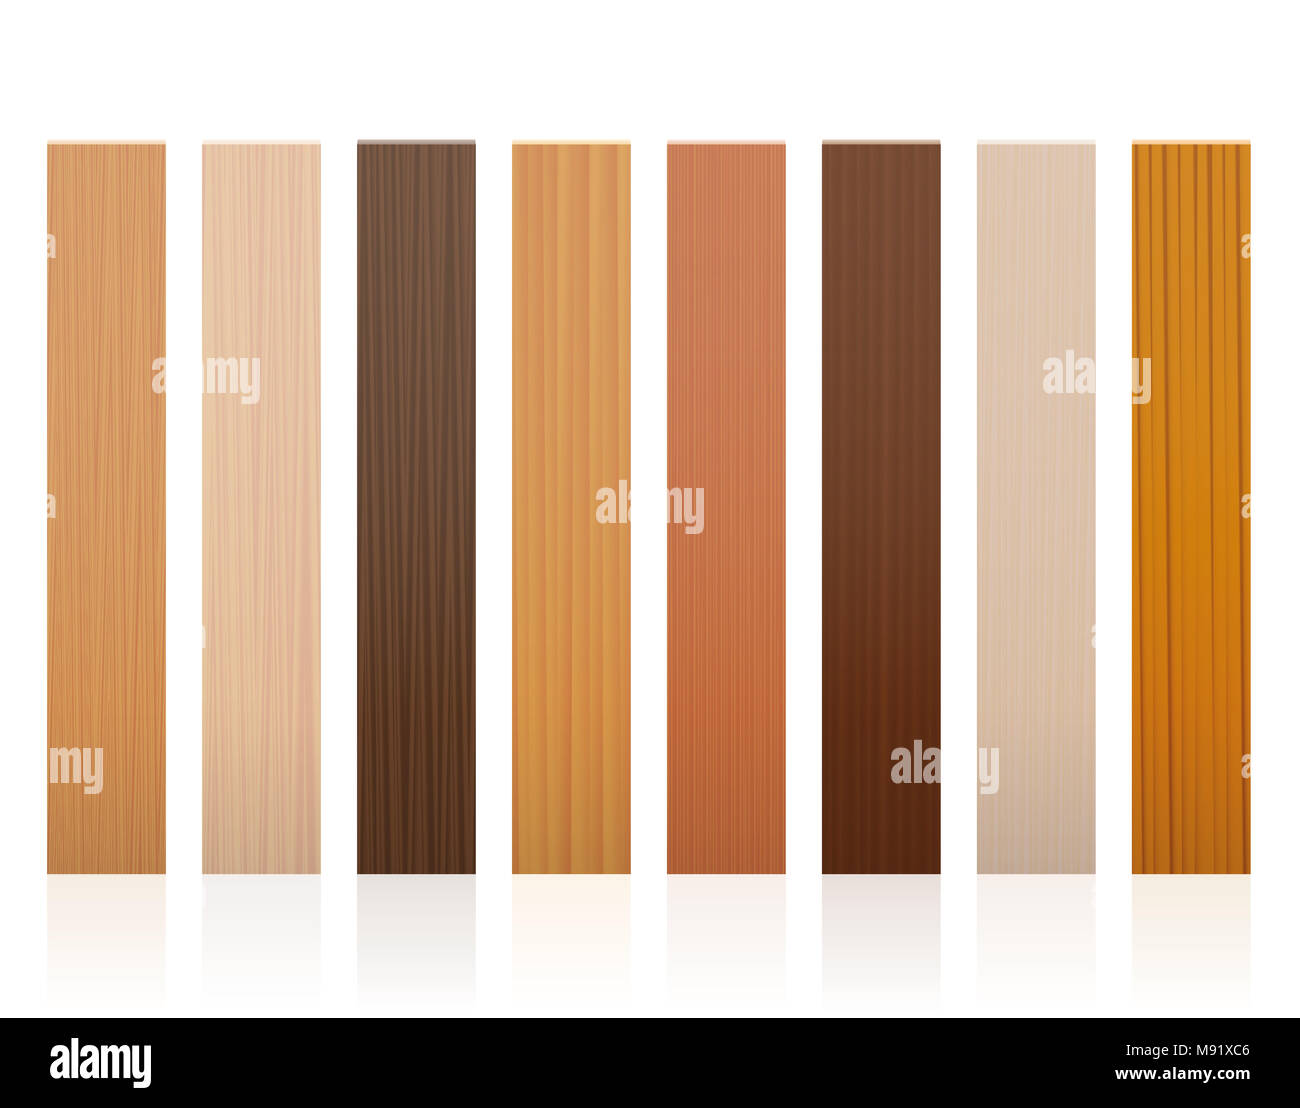 Assicelle di legno. Collezione di tavole di legno, colori differenti, smalti, texture da vari alberi di scegliere. Foto Stock